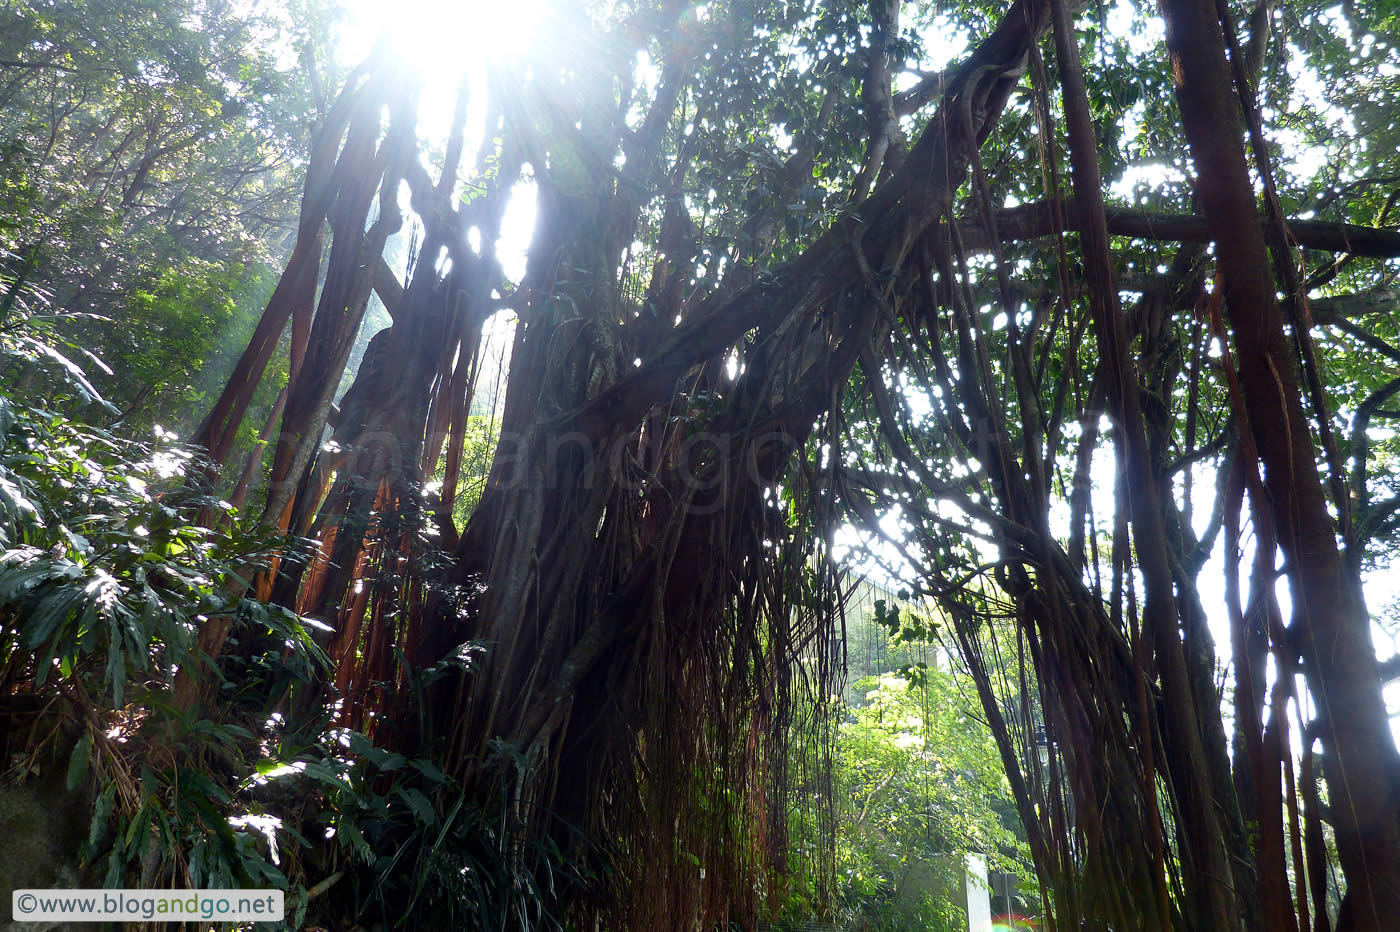 Hong Kong Trail 1 - India Rubber Tree